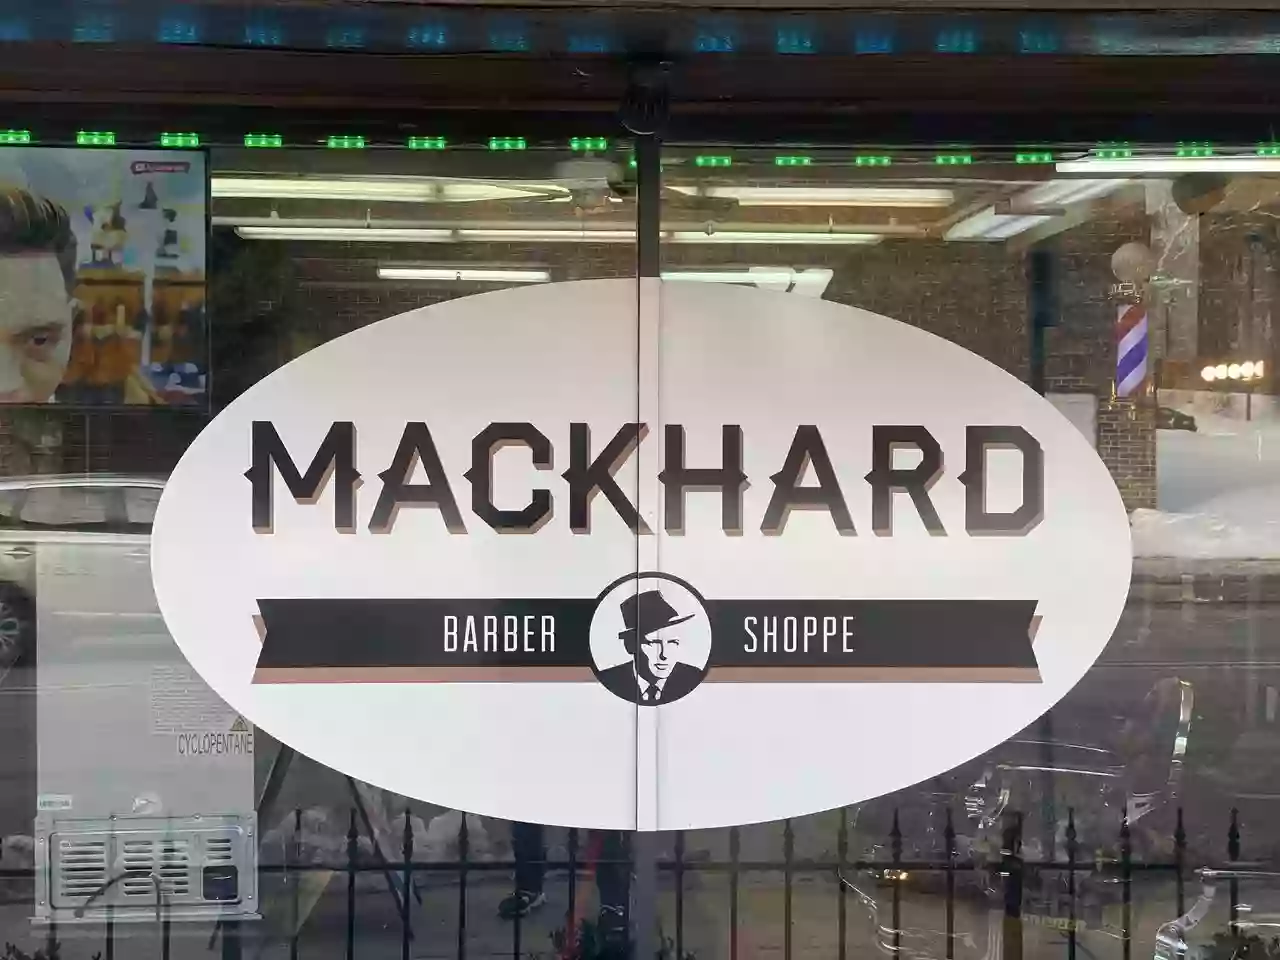 Mackhard Barber Shoppe Naperville